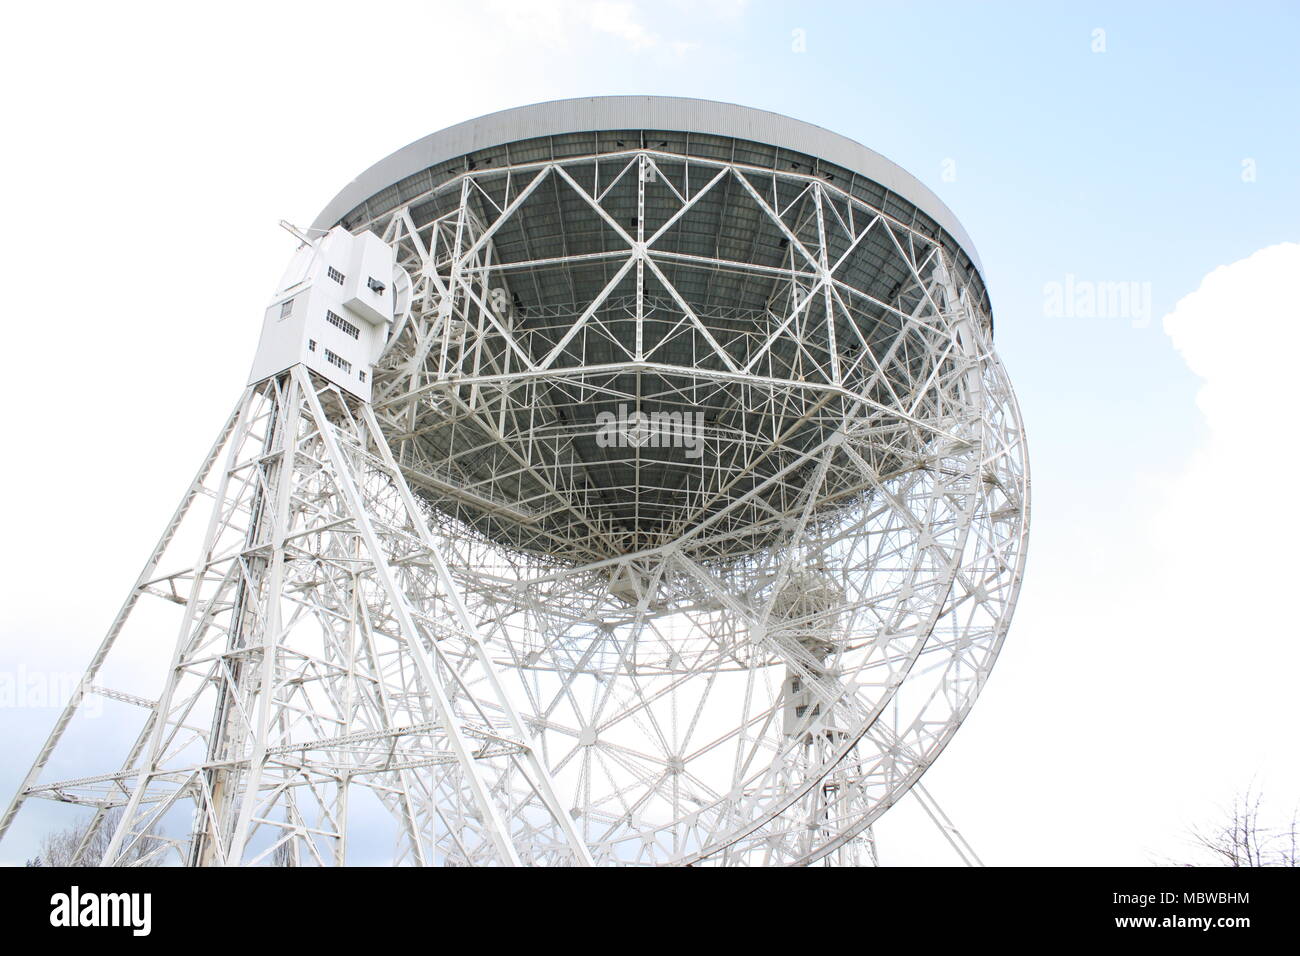 Jodrell Bank Observatory, Macclesfield, Cheshire/Die dritte größte Radioteleskop der Welt. Stockfoto